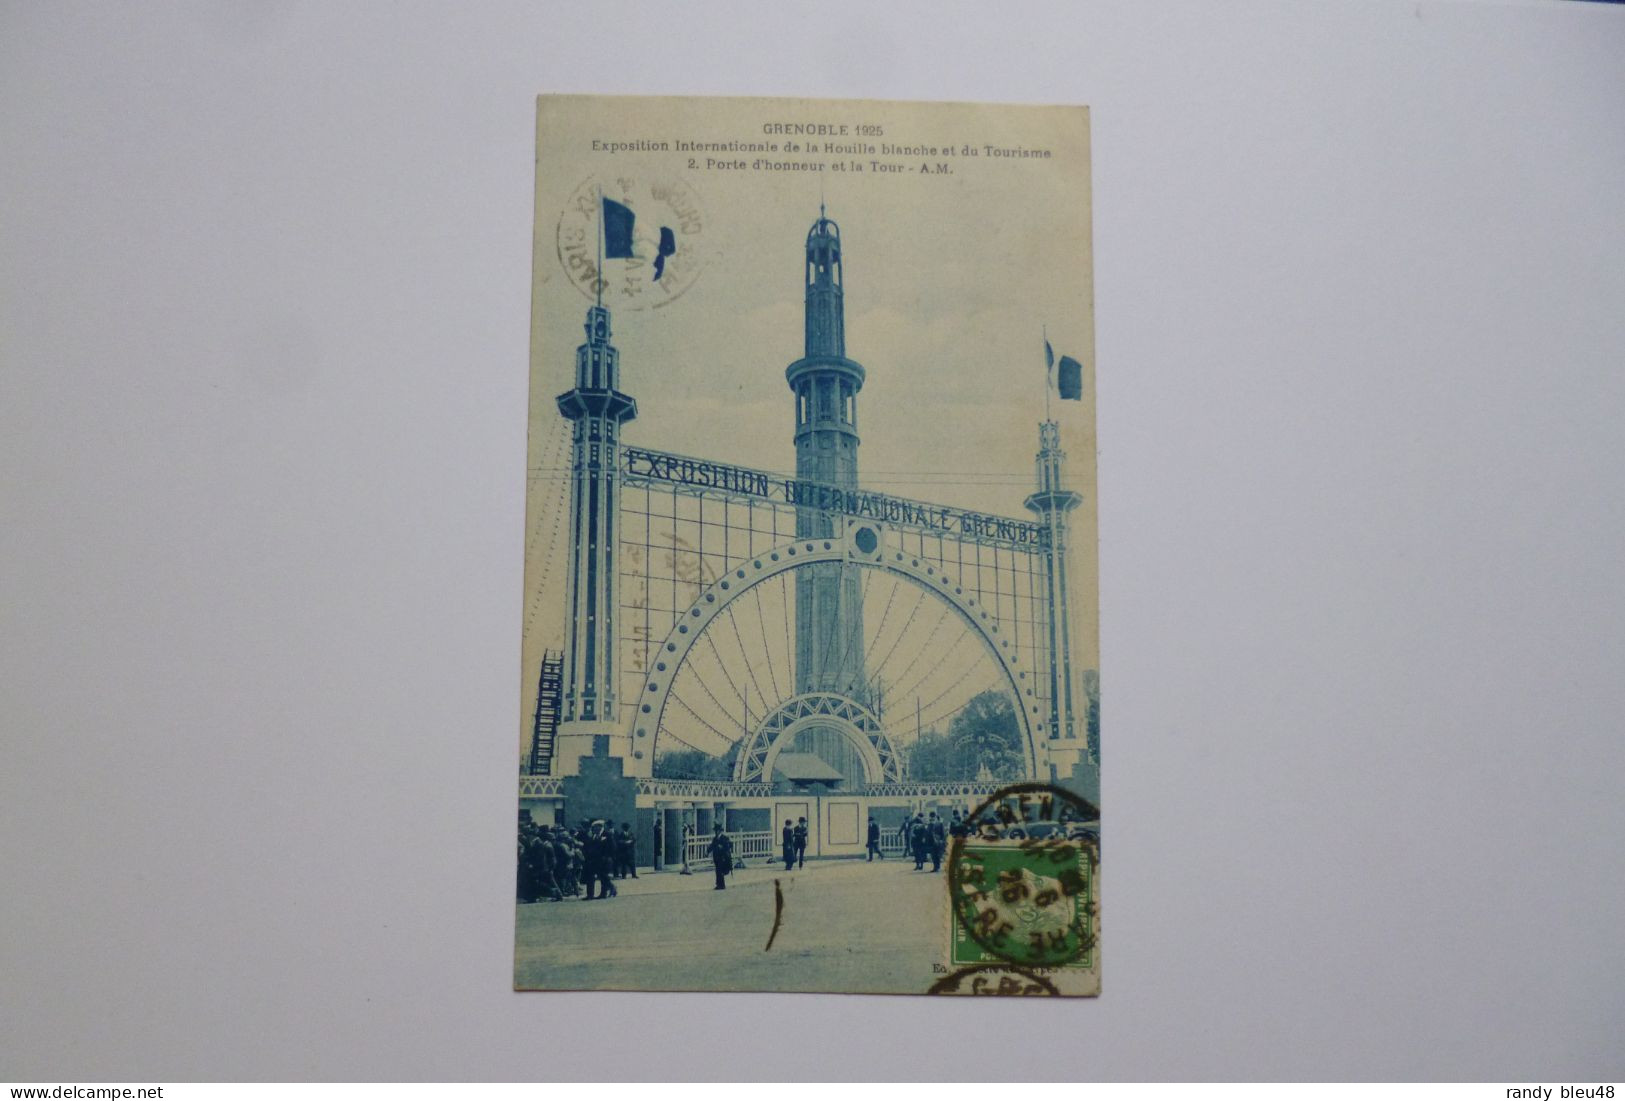 GRENOBLE  -  38  -  Exposition De La Houille Blanche  -  Porte D'honneur Et La Tour  -  1925  -  Isère - Grenoble